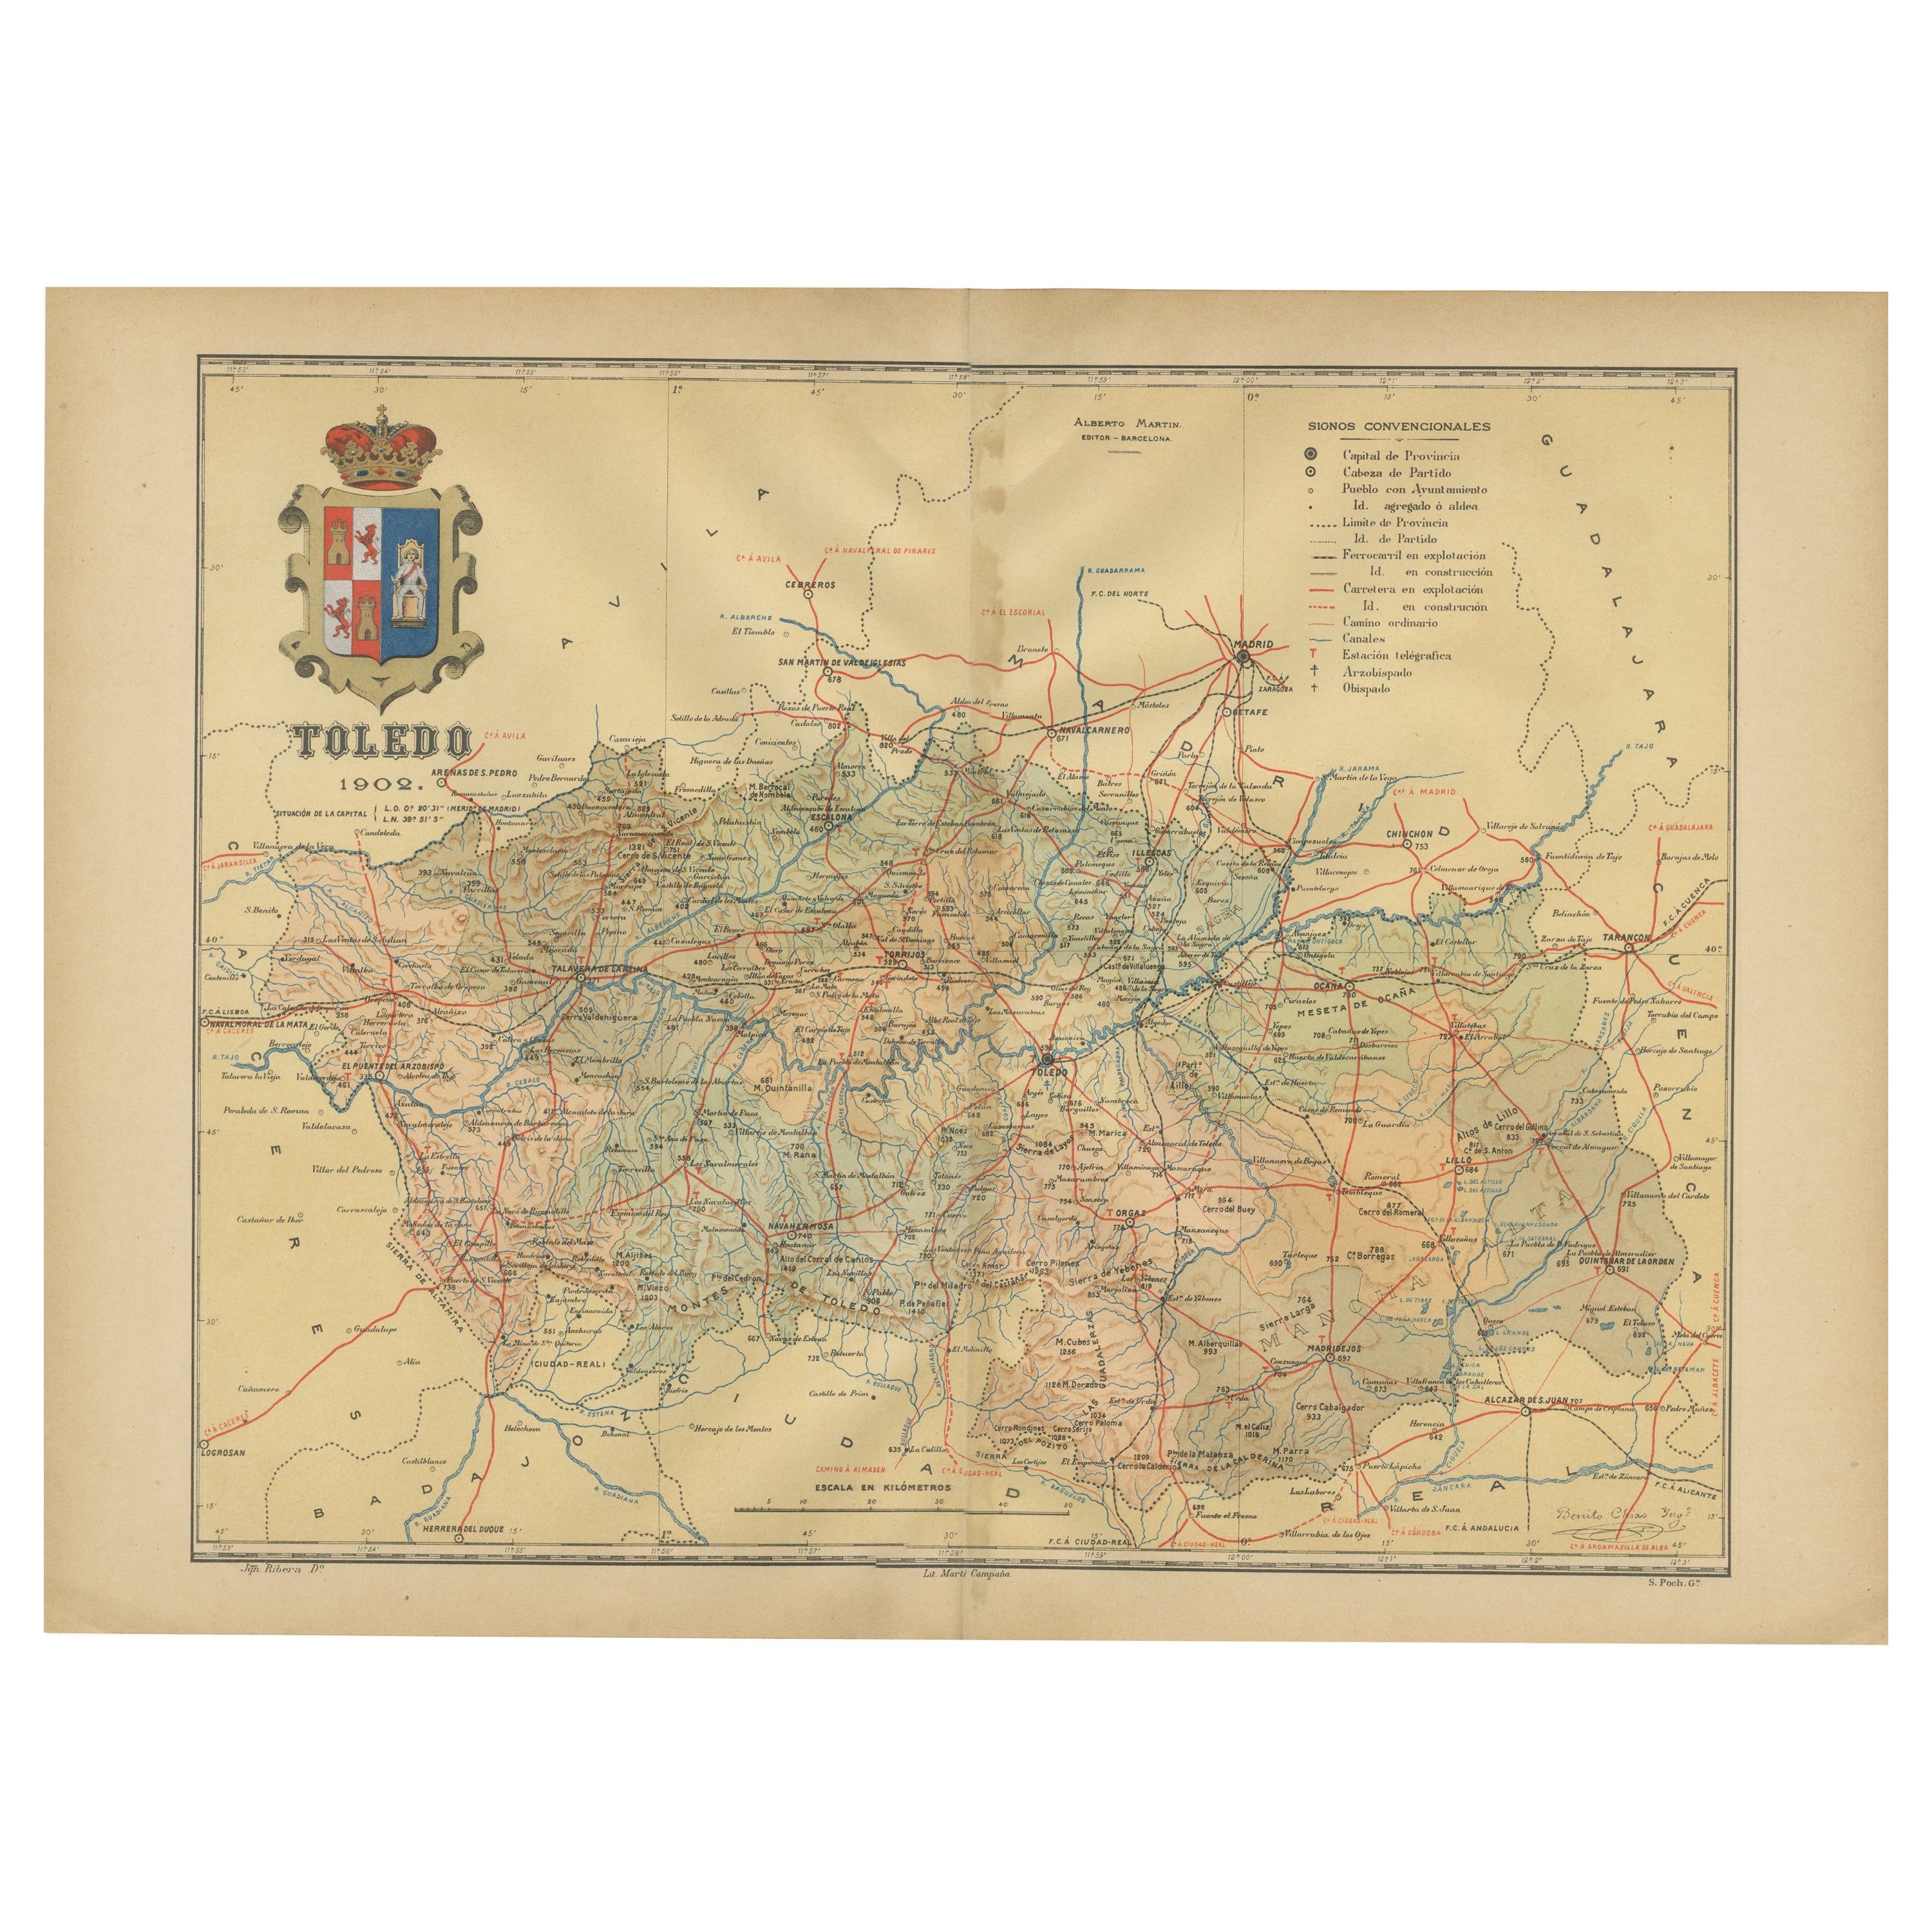 Toledo 1902: Eine historische Kartographische Studie dieser spanischen Provinz im Angebot